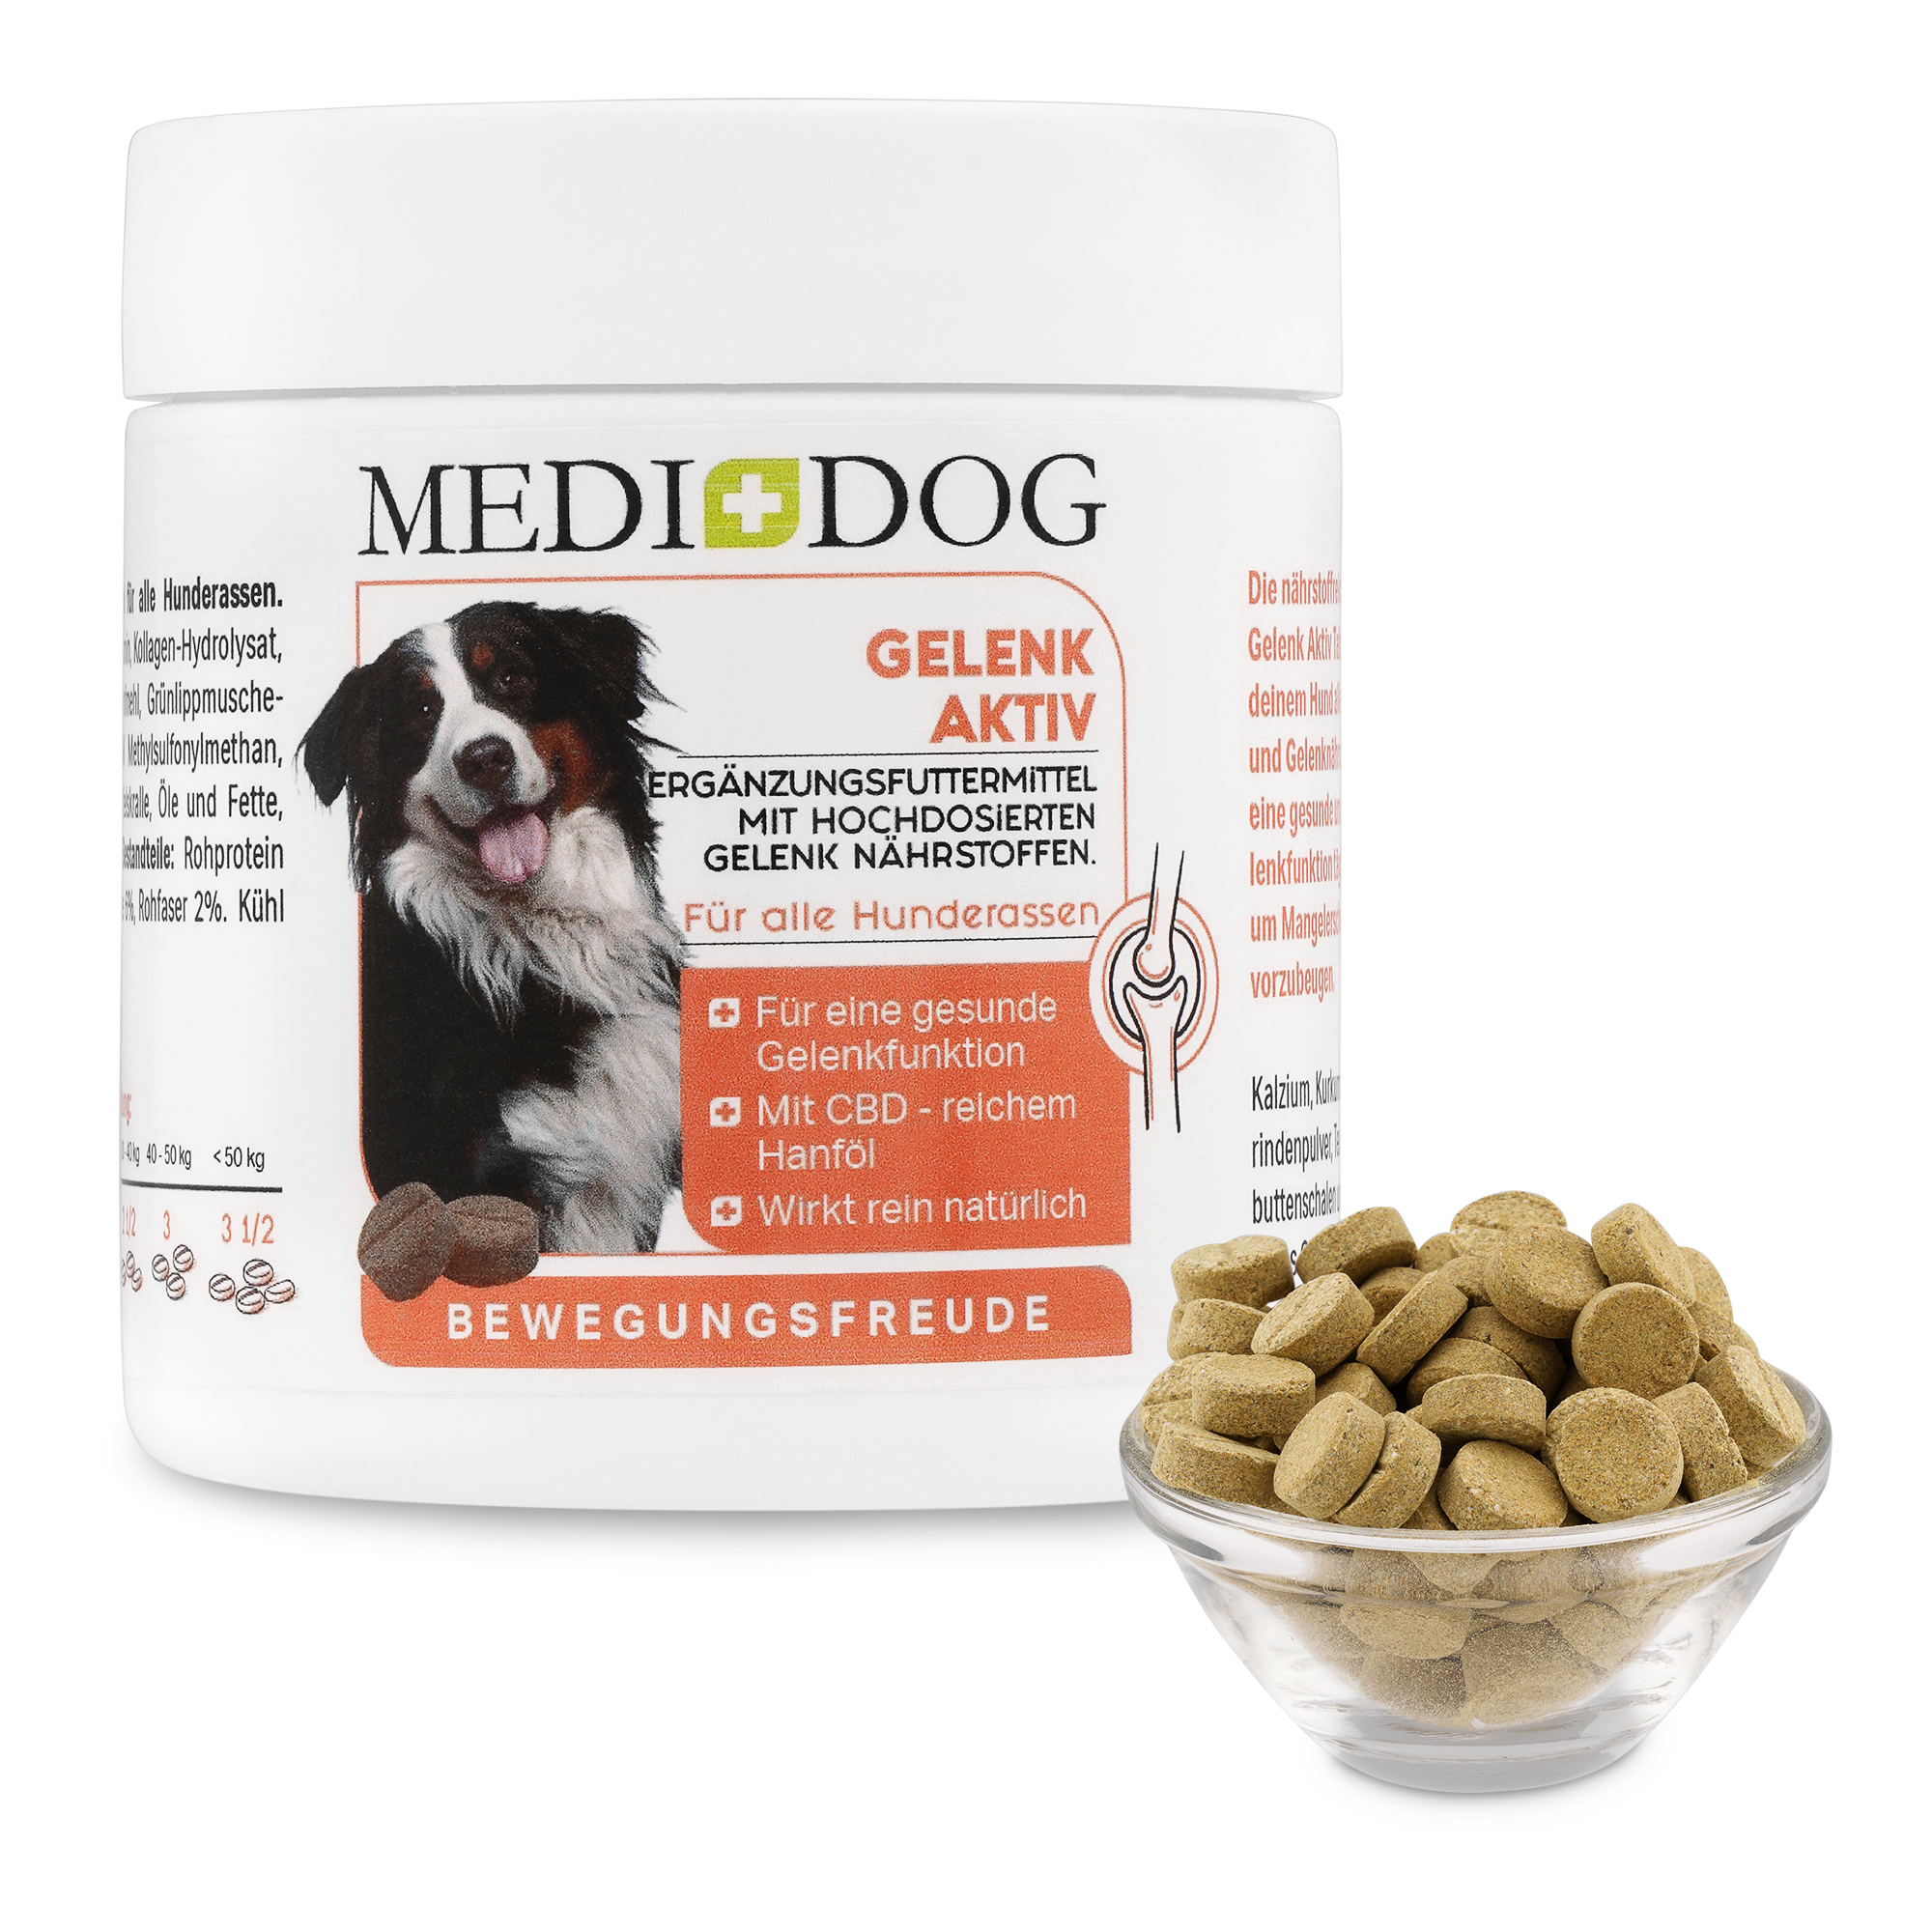 Medidog Gelenk Aktiv Tabletten für alle  Hunderassen als natürlicher Lieferant für sämtliche Nährstoffe und Vitalstoffe, die Hunde für eine normale, gesunde Gelenkfunktion, starke Knochen und elastische Sehnen brauchen